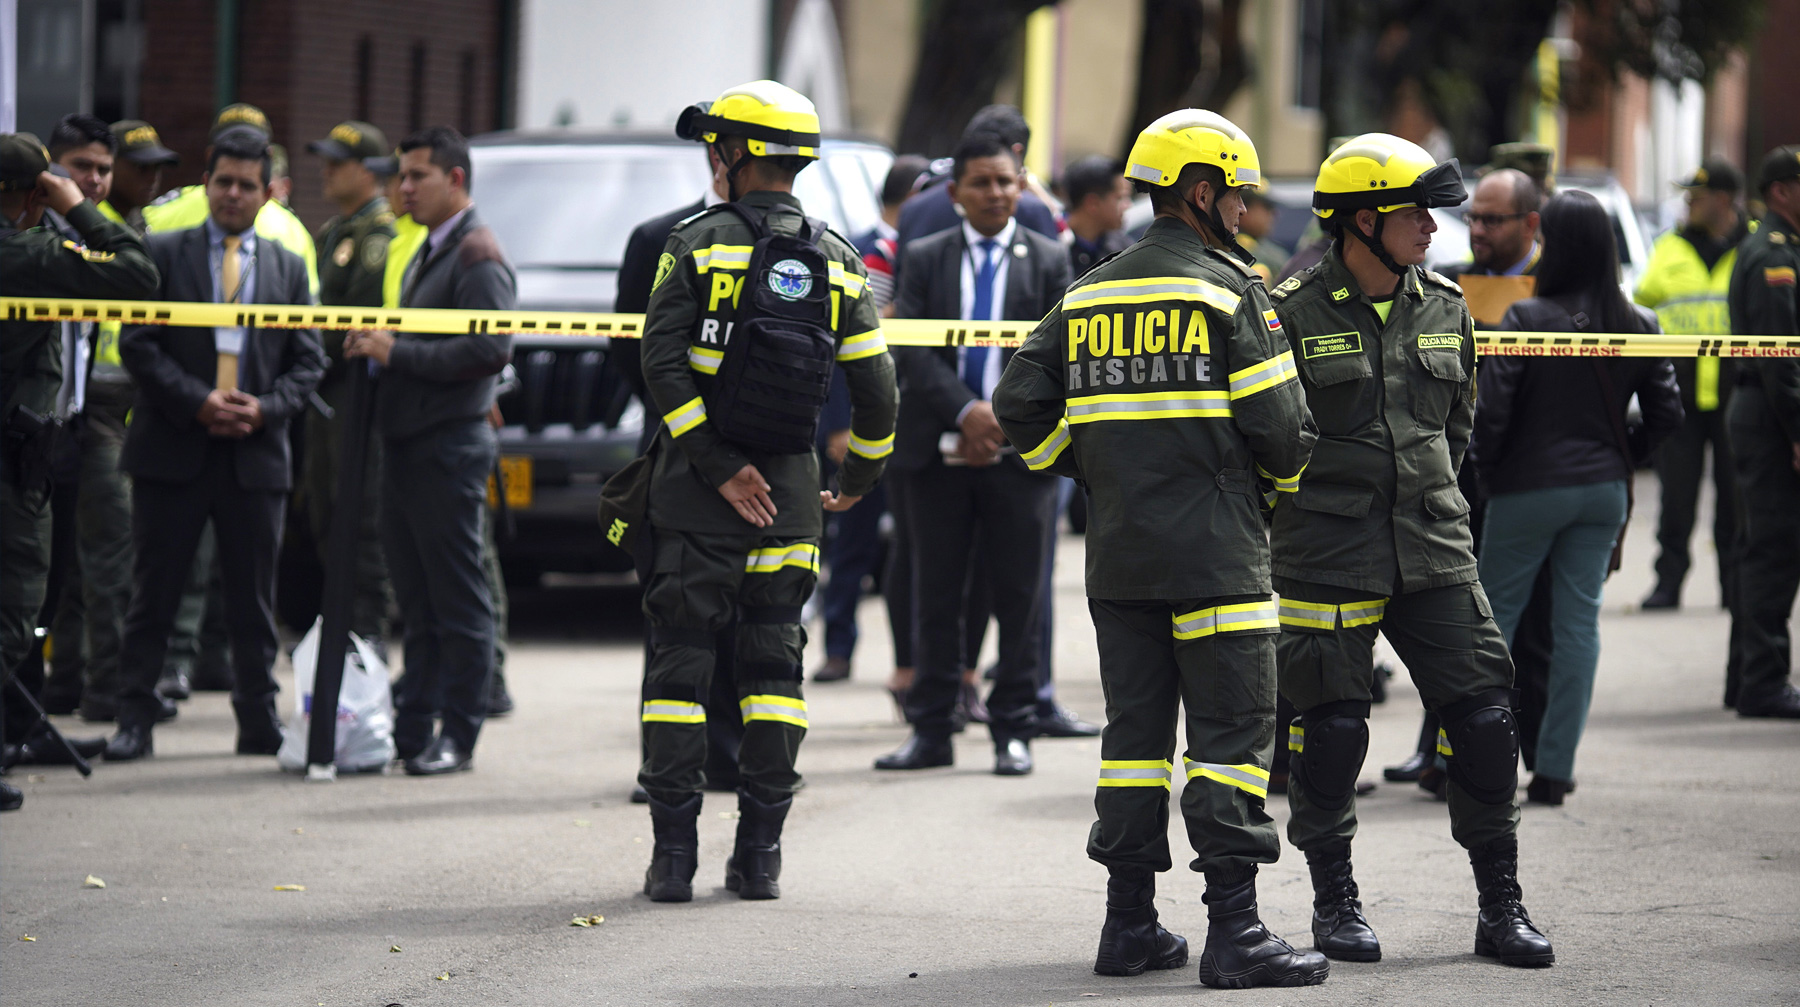 Власти выясняют, действовал мужчина один или по приказу какой-либо группировки Полицейские работают на месте взрыва автомобильной бомбы в Боготе, столице Колумбии, 17 января 2019 года